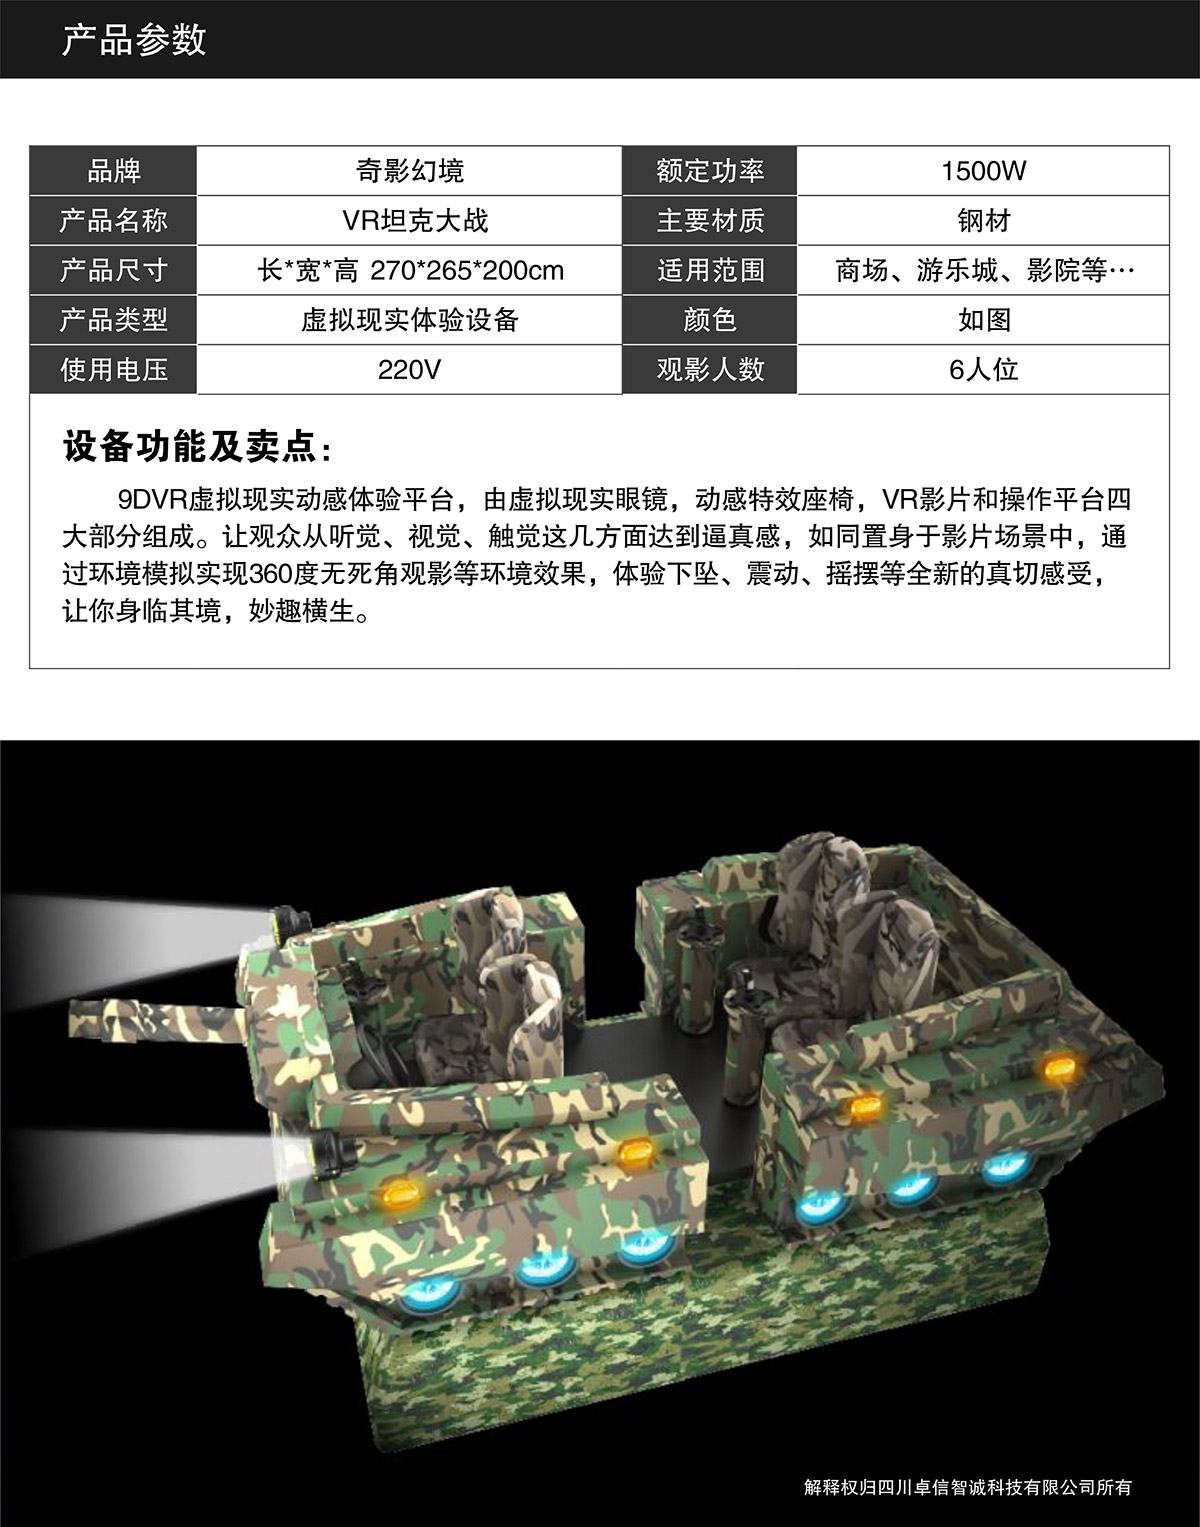 模拟安全VR坦克大战产品参数.jpg